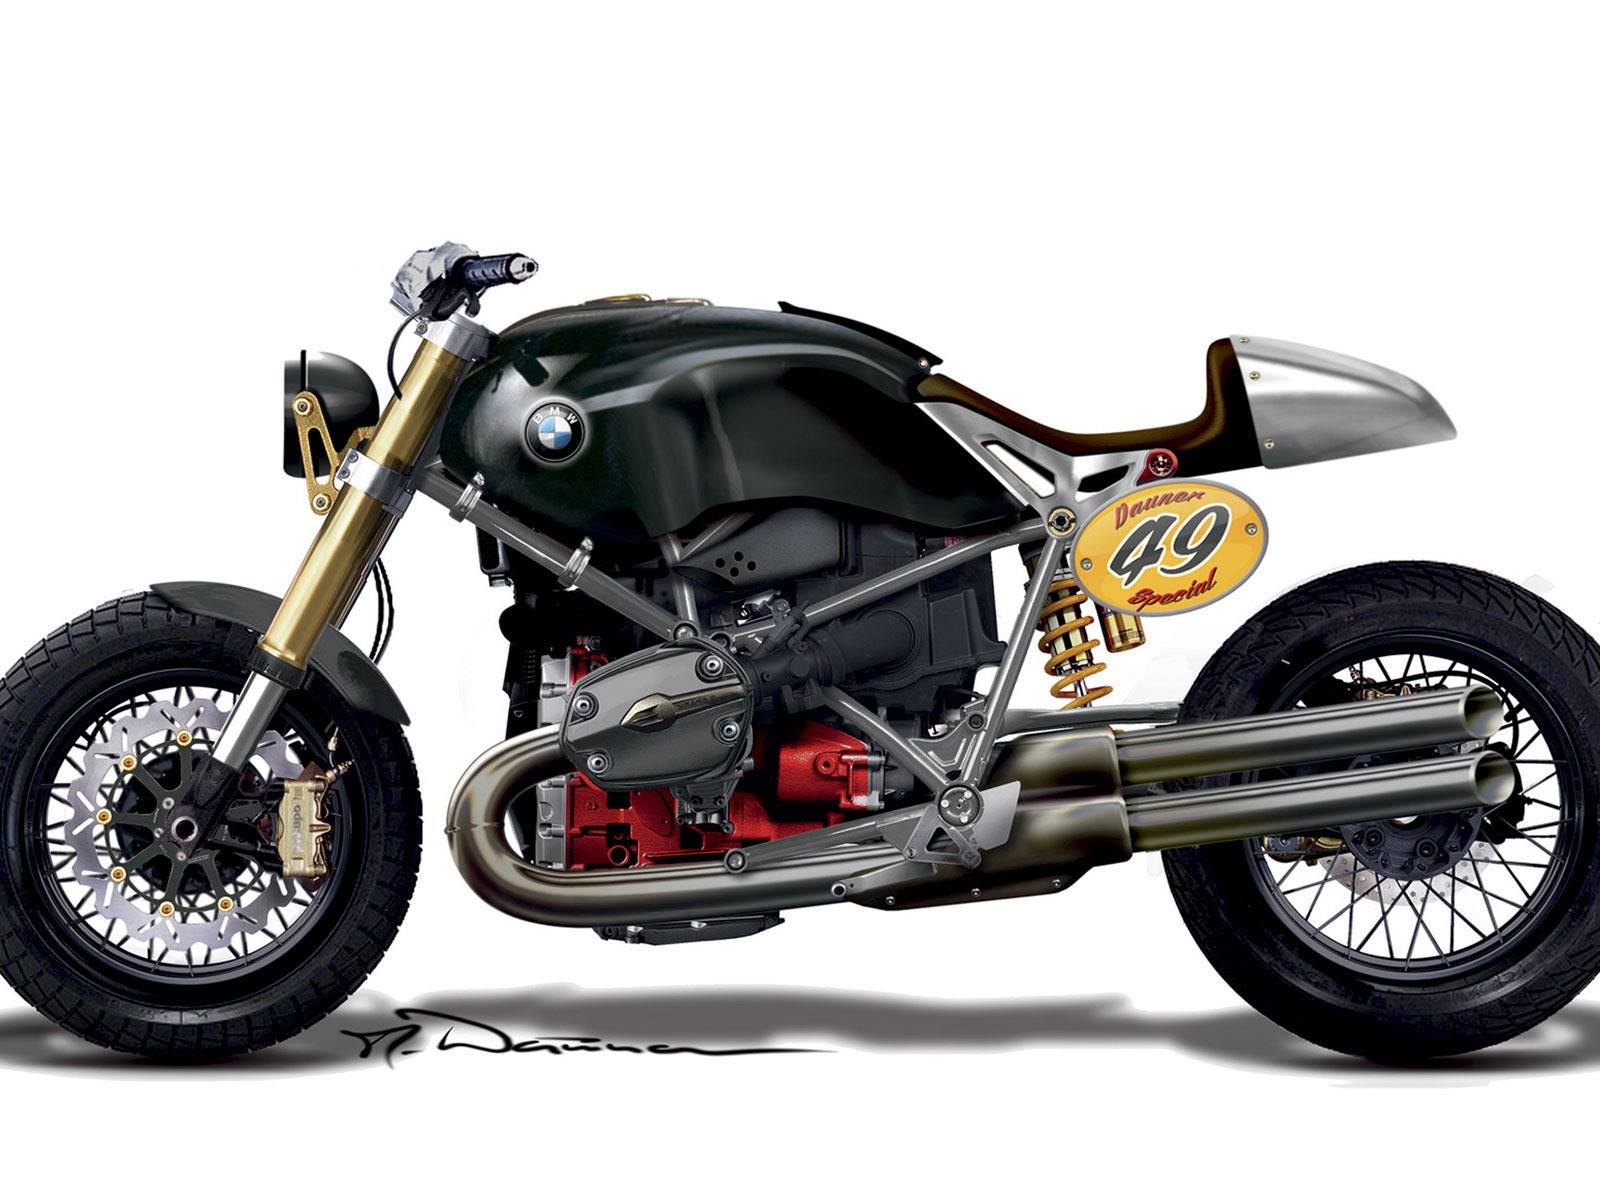 Concepto Fondos de motos (1) #5 - 1600x1200